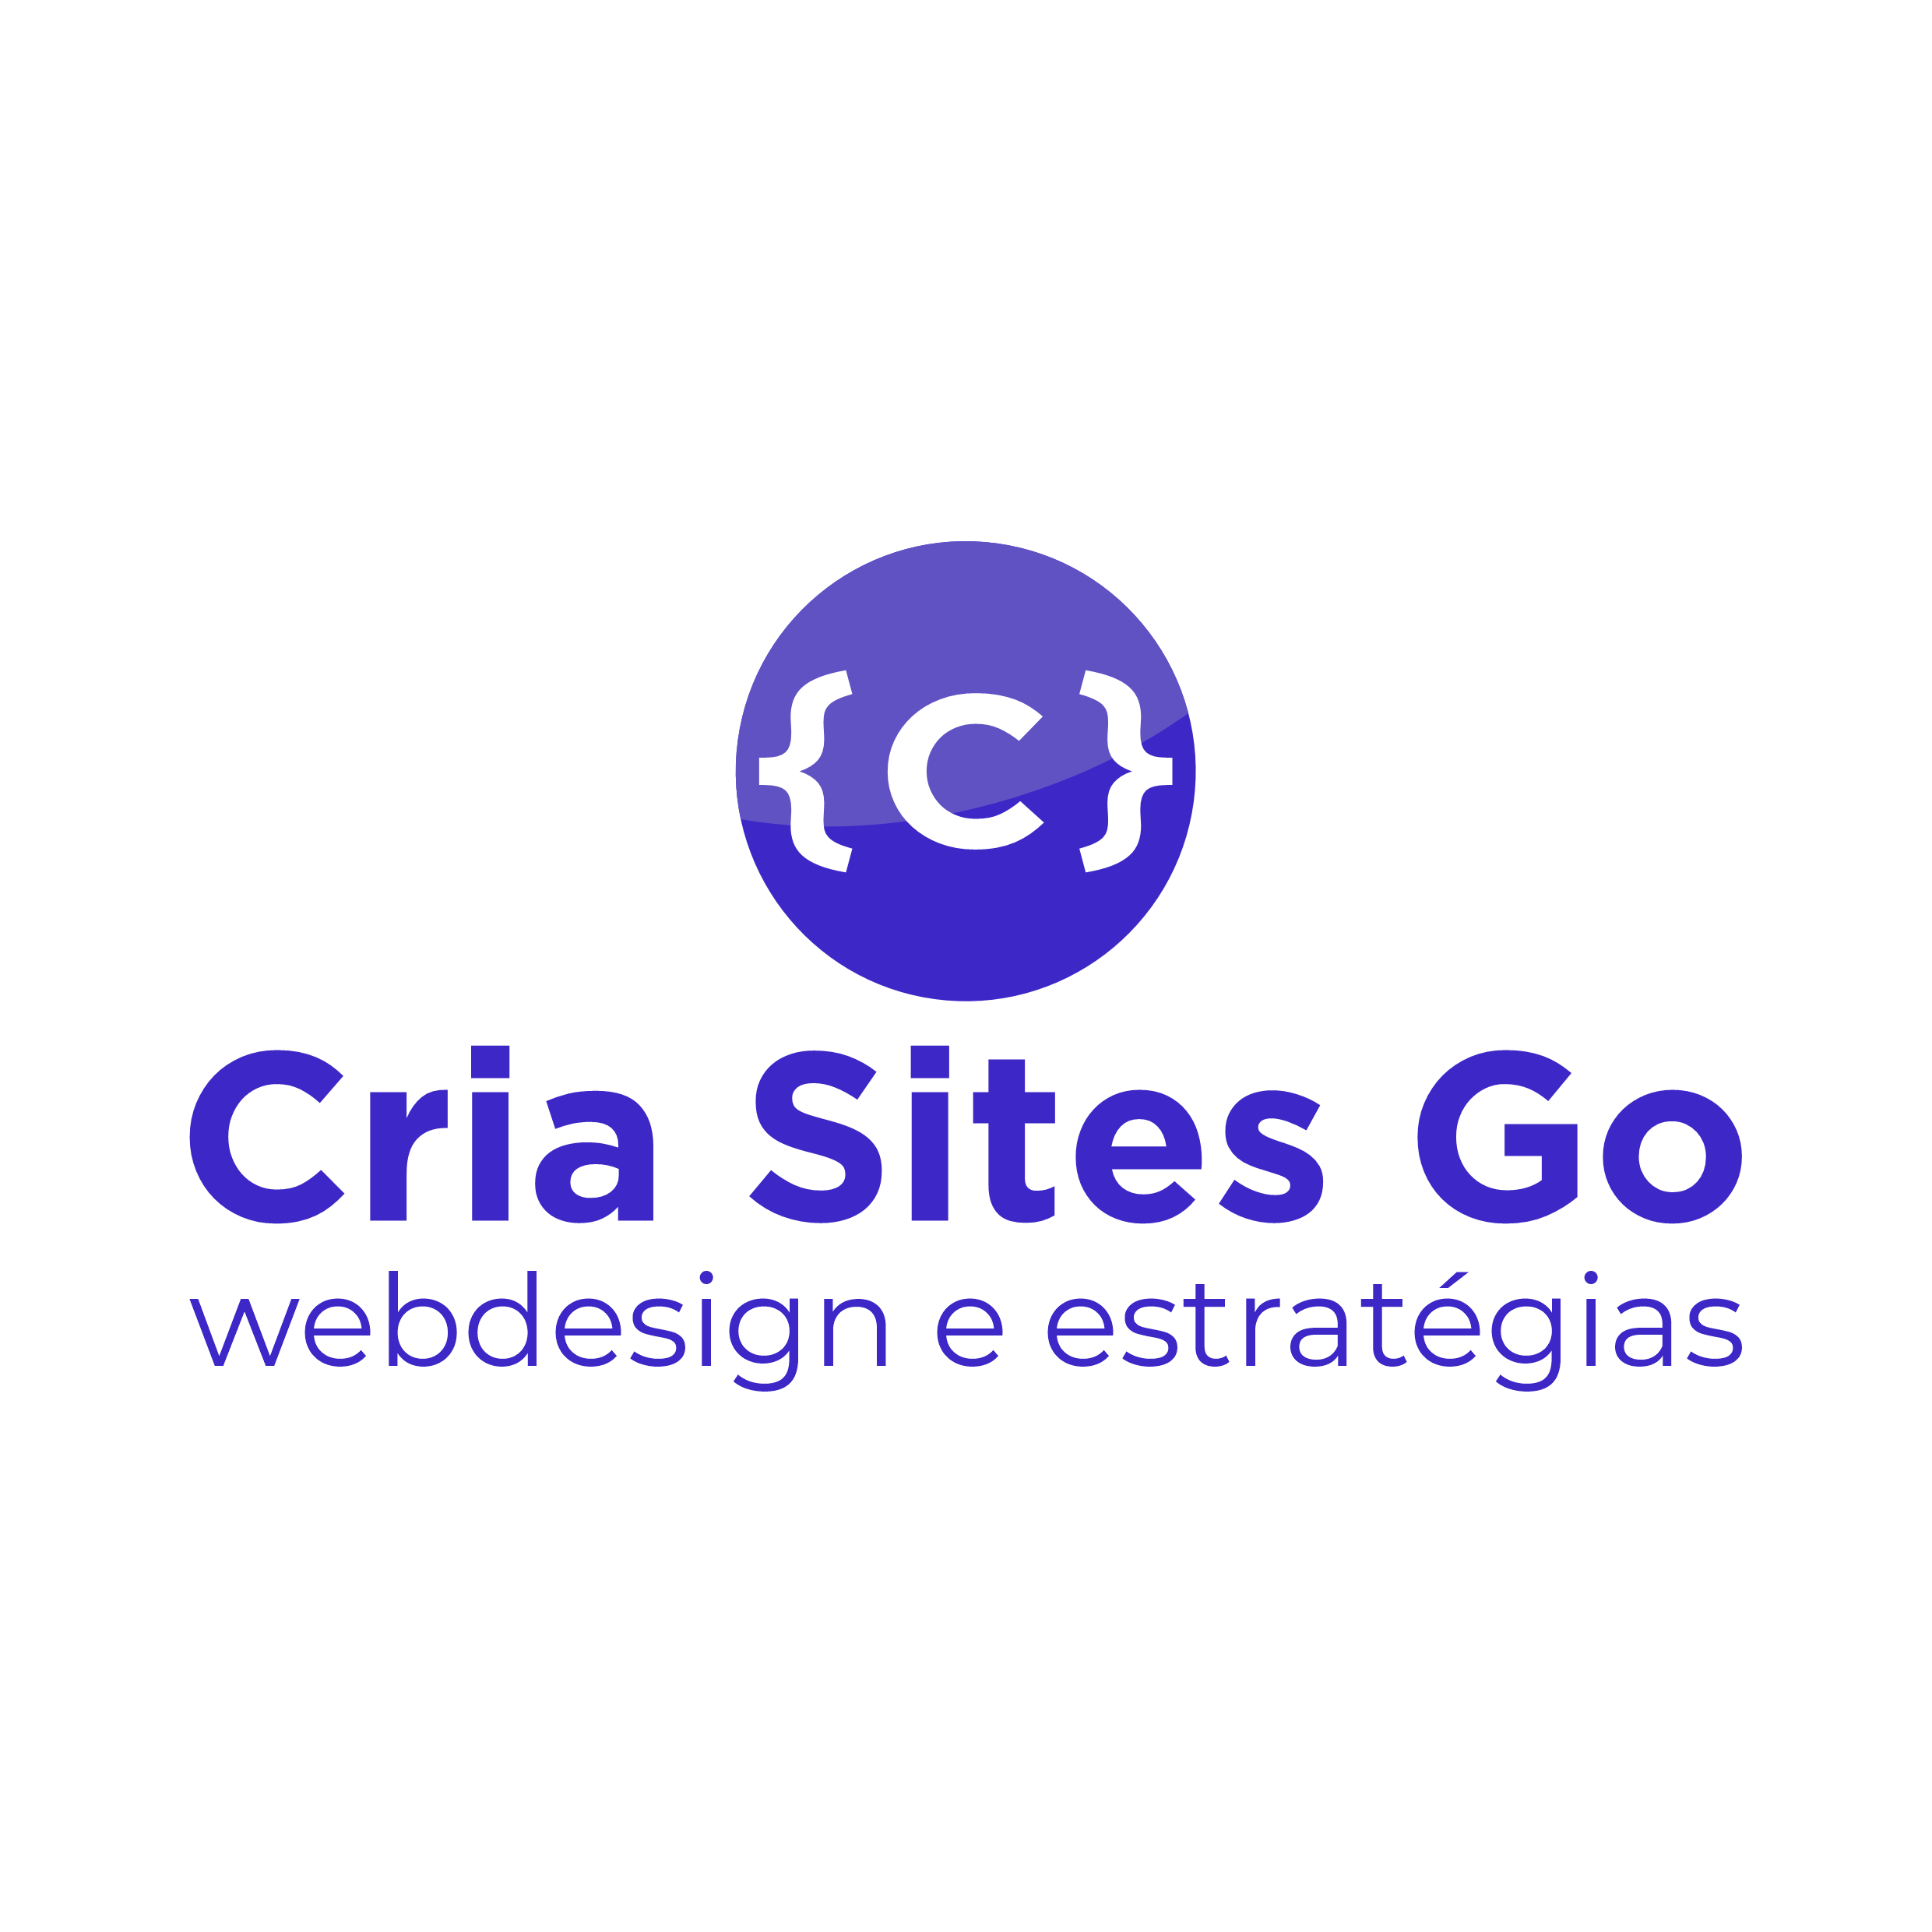 Cria Sites Go